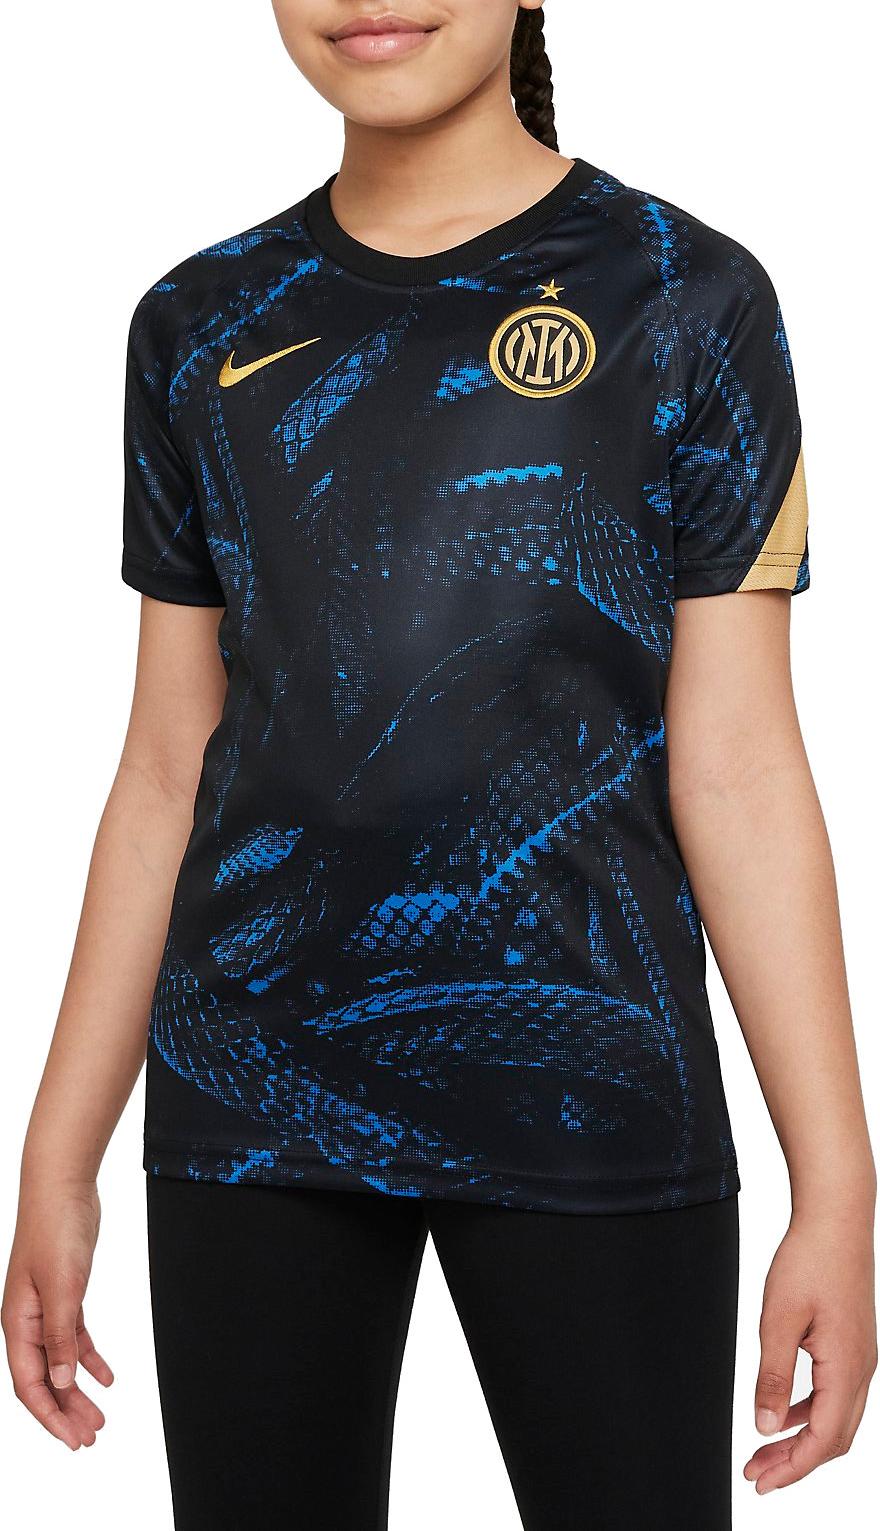 Tričko s krátkým rukávem pro větší děti Nike Inter Milan